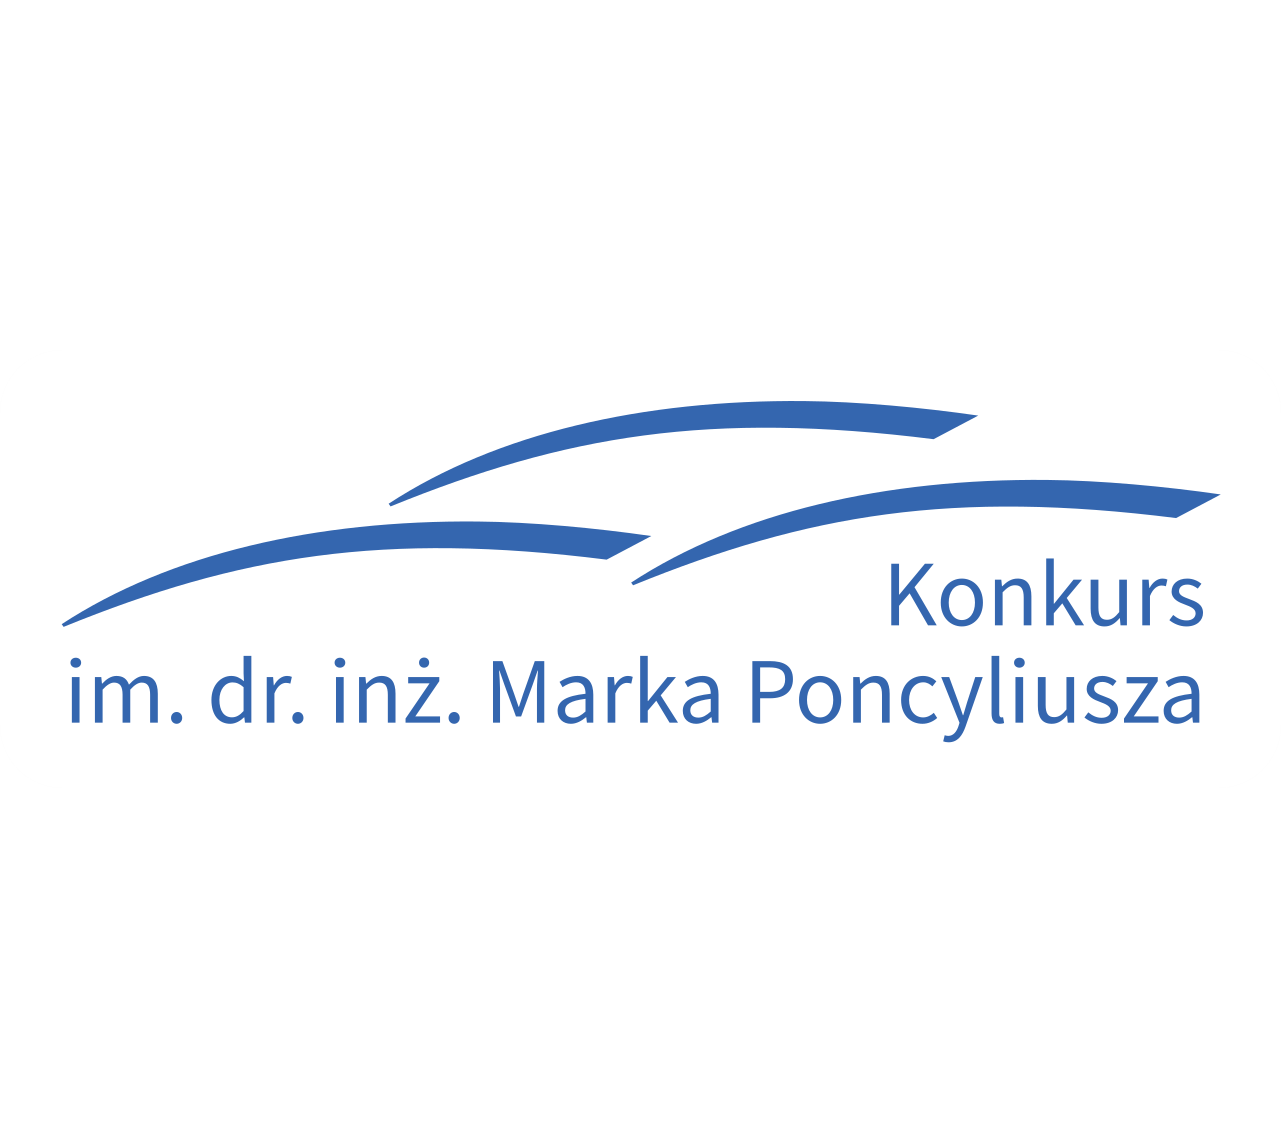 Logo konkursu im. dr. inż. Marka Poncyliusza